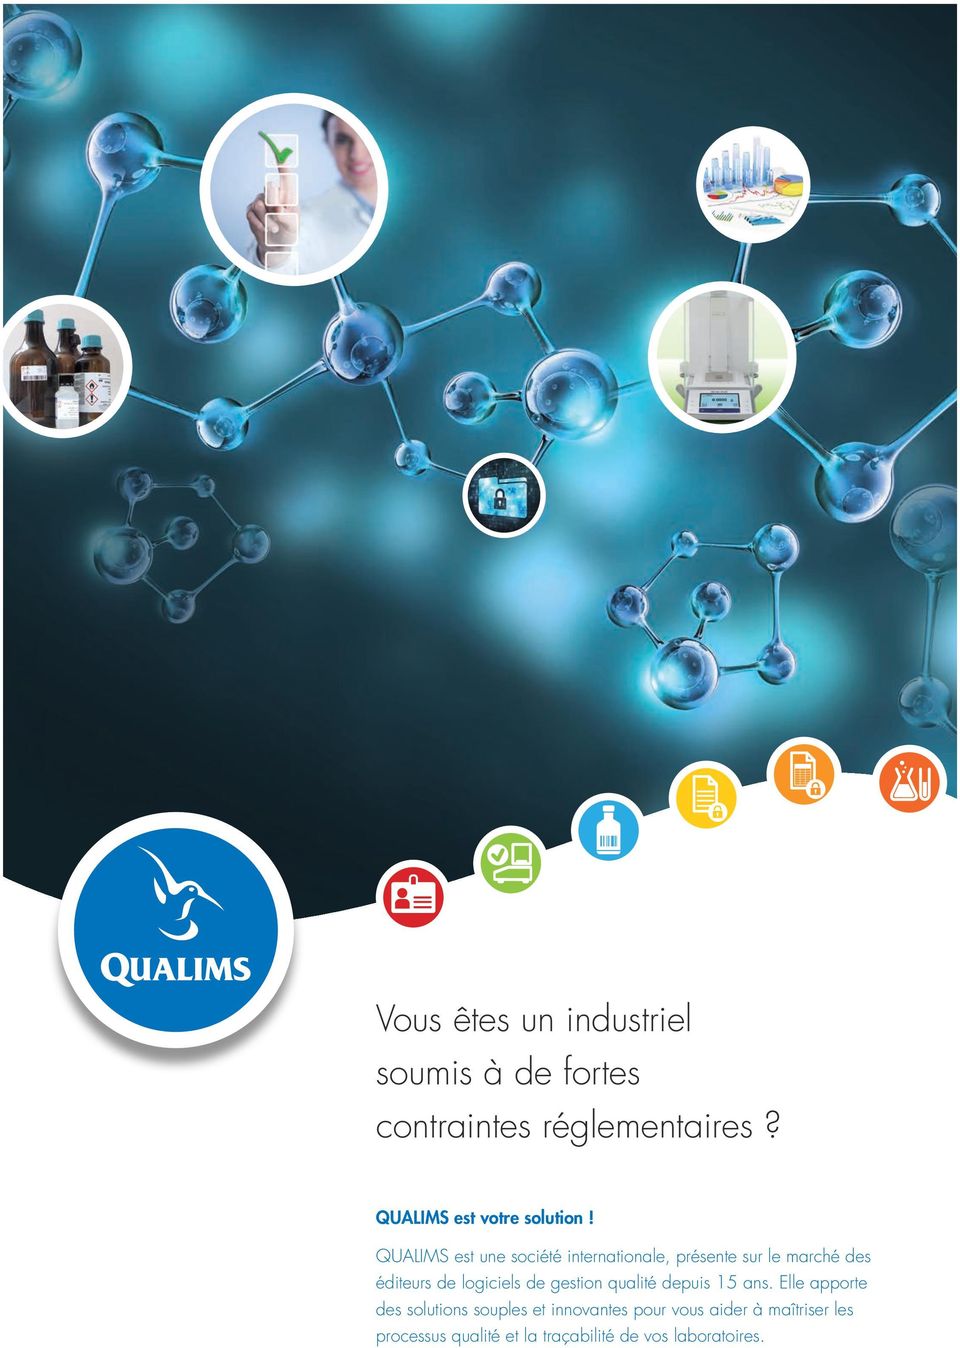 QUALIMS est une société internationale, présente sur le marché des éditeurs de logiciels